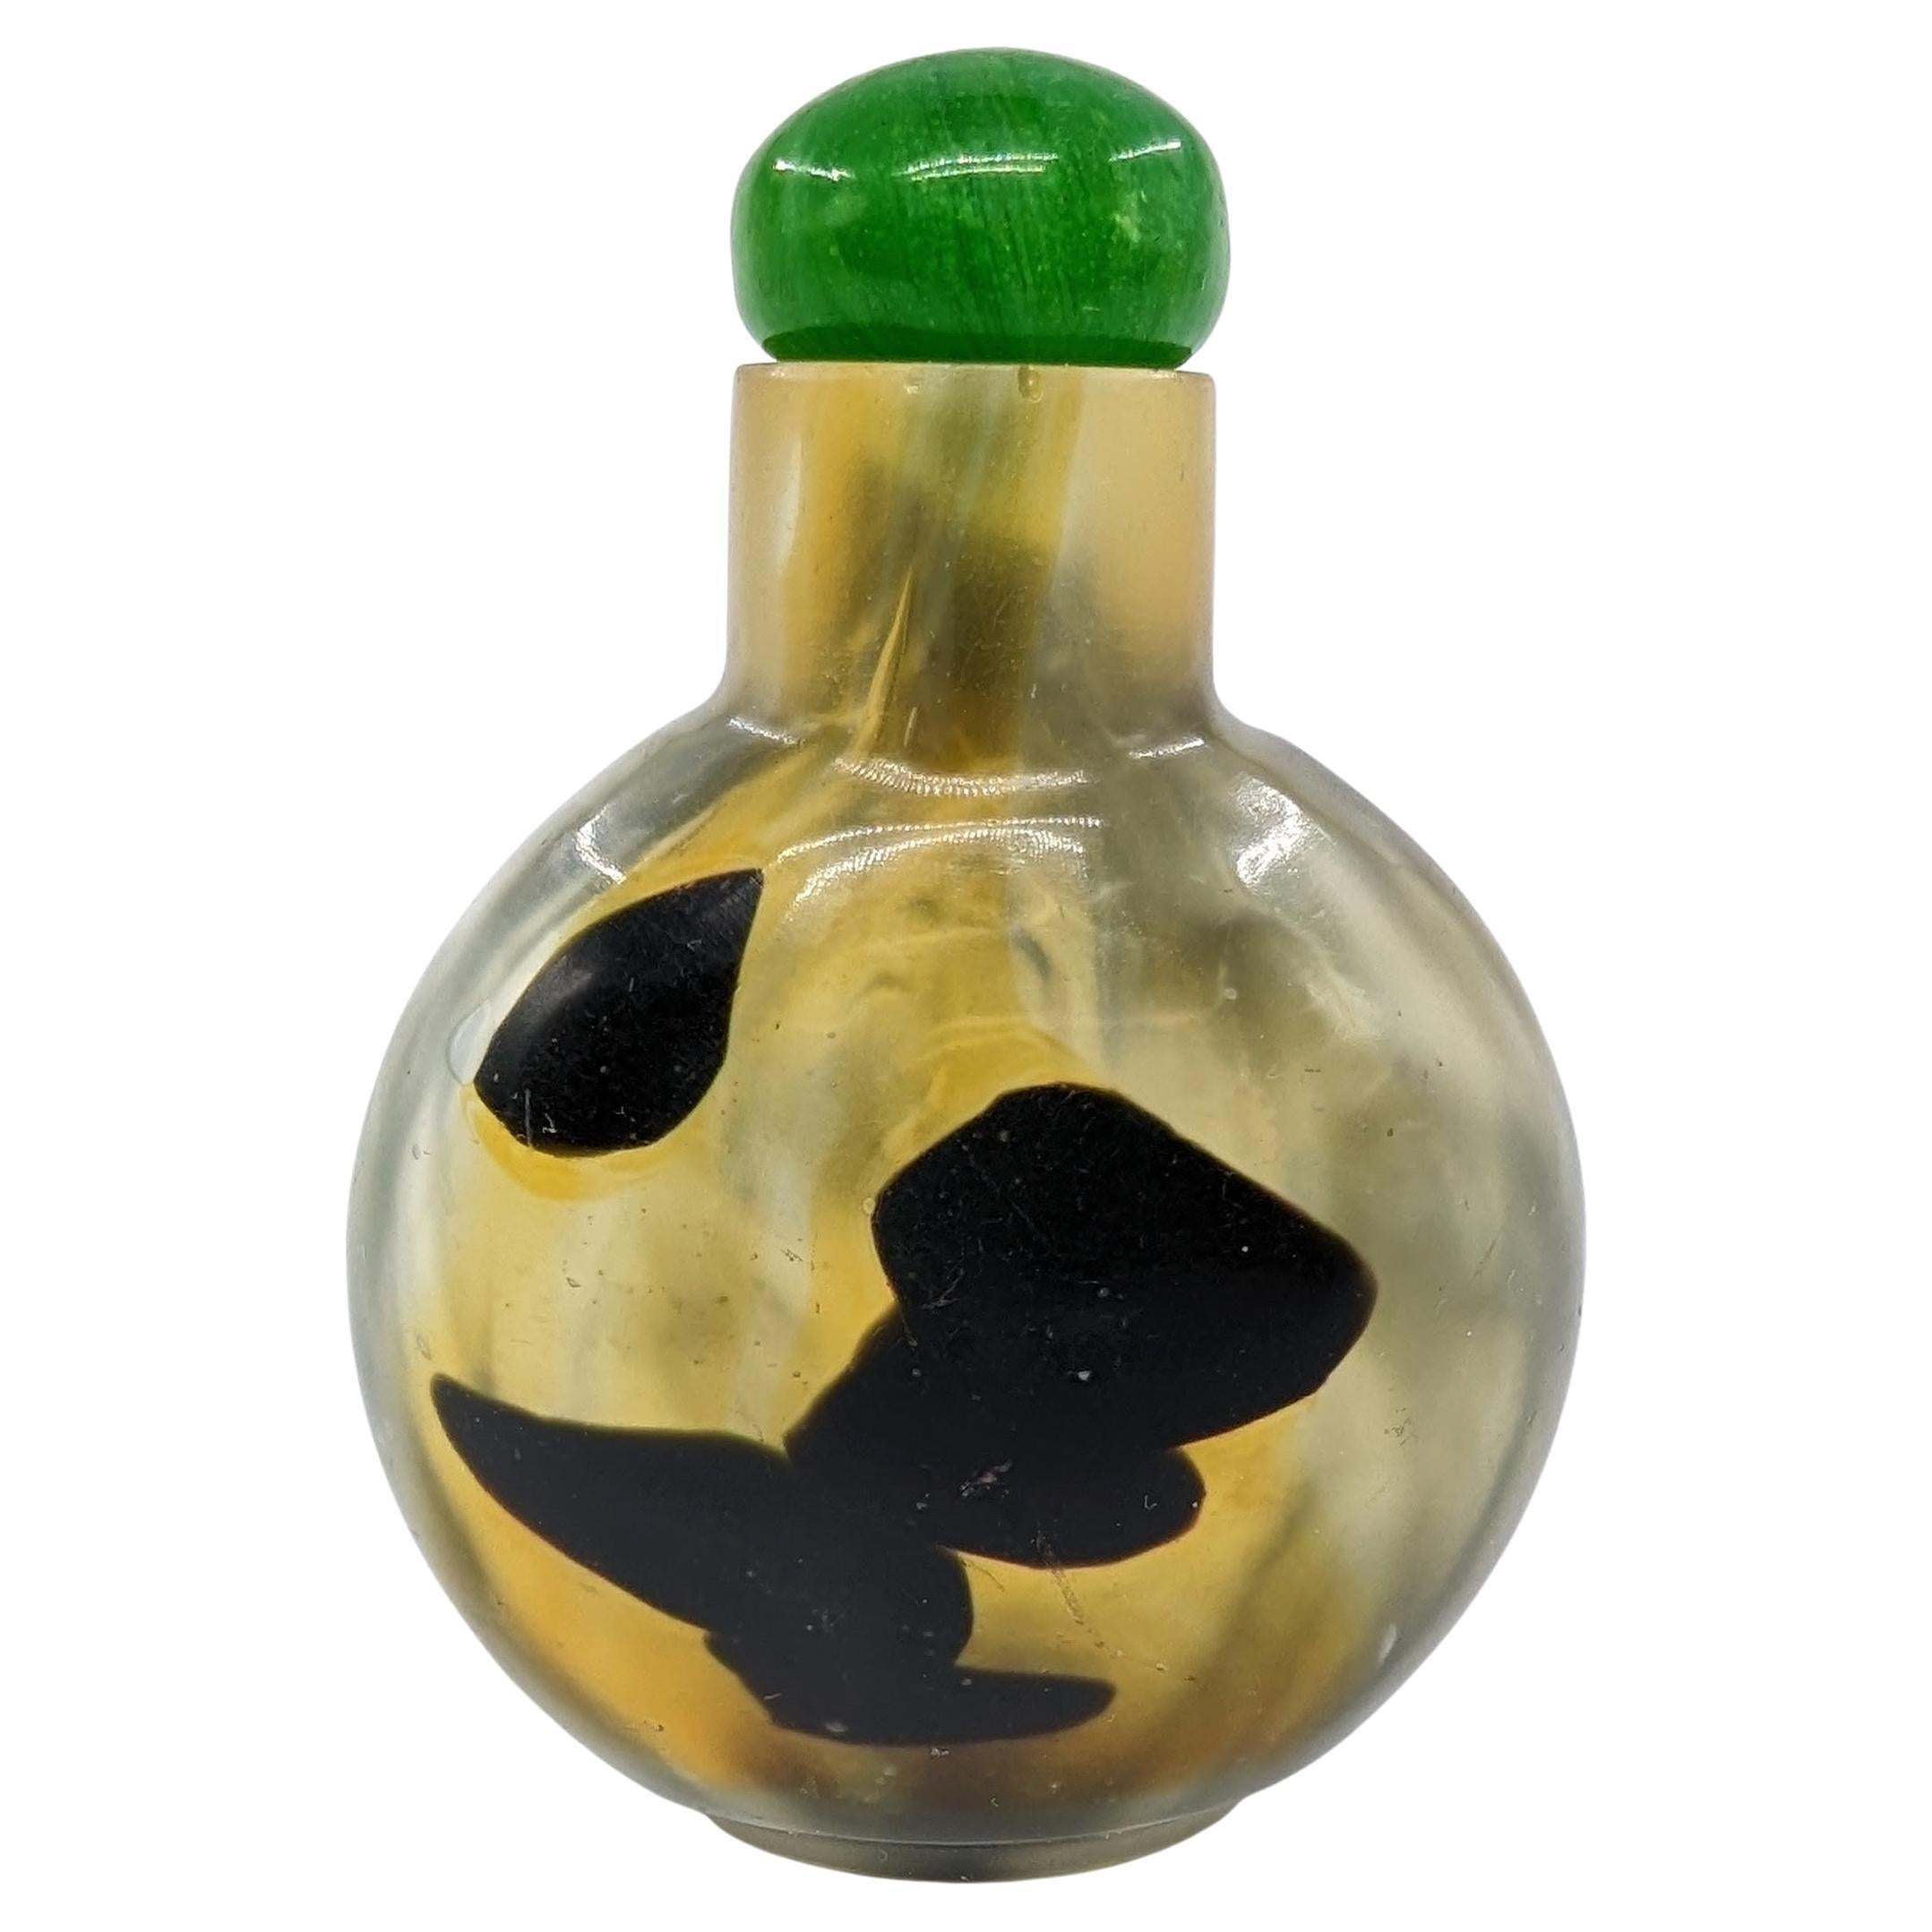 Antike chinesische Schnupftabakflasche aus 3-farbigem Pekinger Glas, das Schattenachat imitiert, in abgeflachter, kugelförmiger Form, auf einem geschnitzten flachen Fußring, mit einem grünen Wirbelglasstopfen

19c Qing-Dynastie